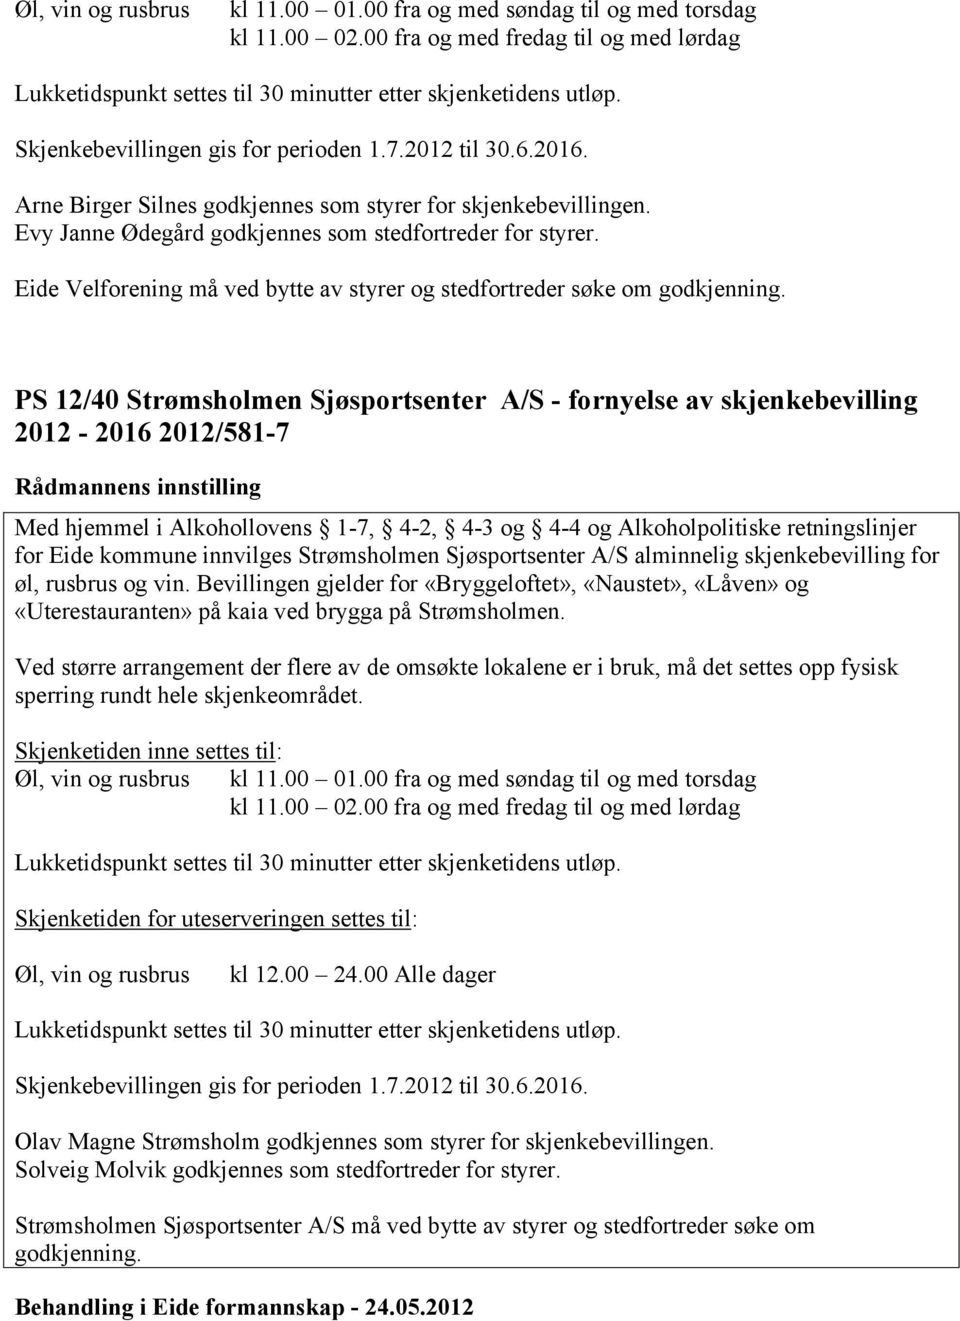 PS 12/40 Strømsholmen Sjøsportsenter A/S - fornyelse av skjenkebevilling 2012-2016 2012/581-7 for Eide kommune innvilges Strømsholmen Sjøsportsenter A/S alminnelig skjenkebevilling for øl, rusbrus og